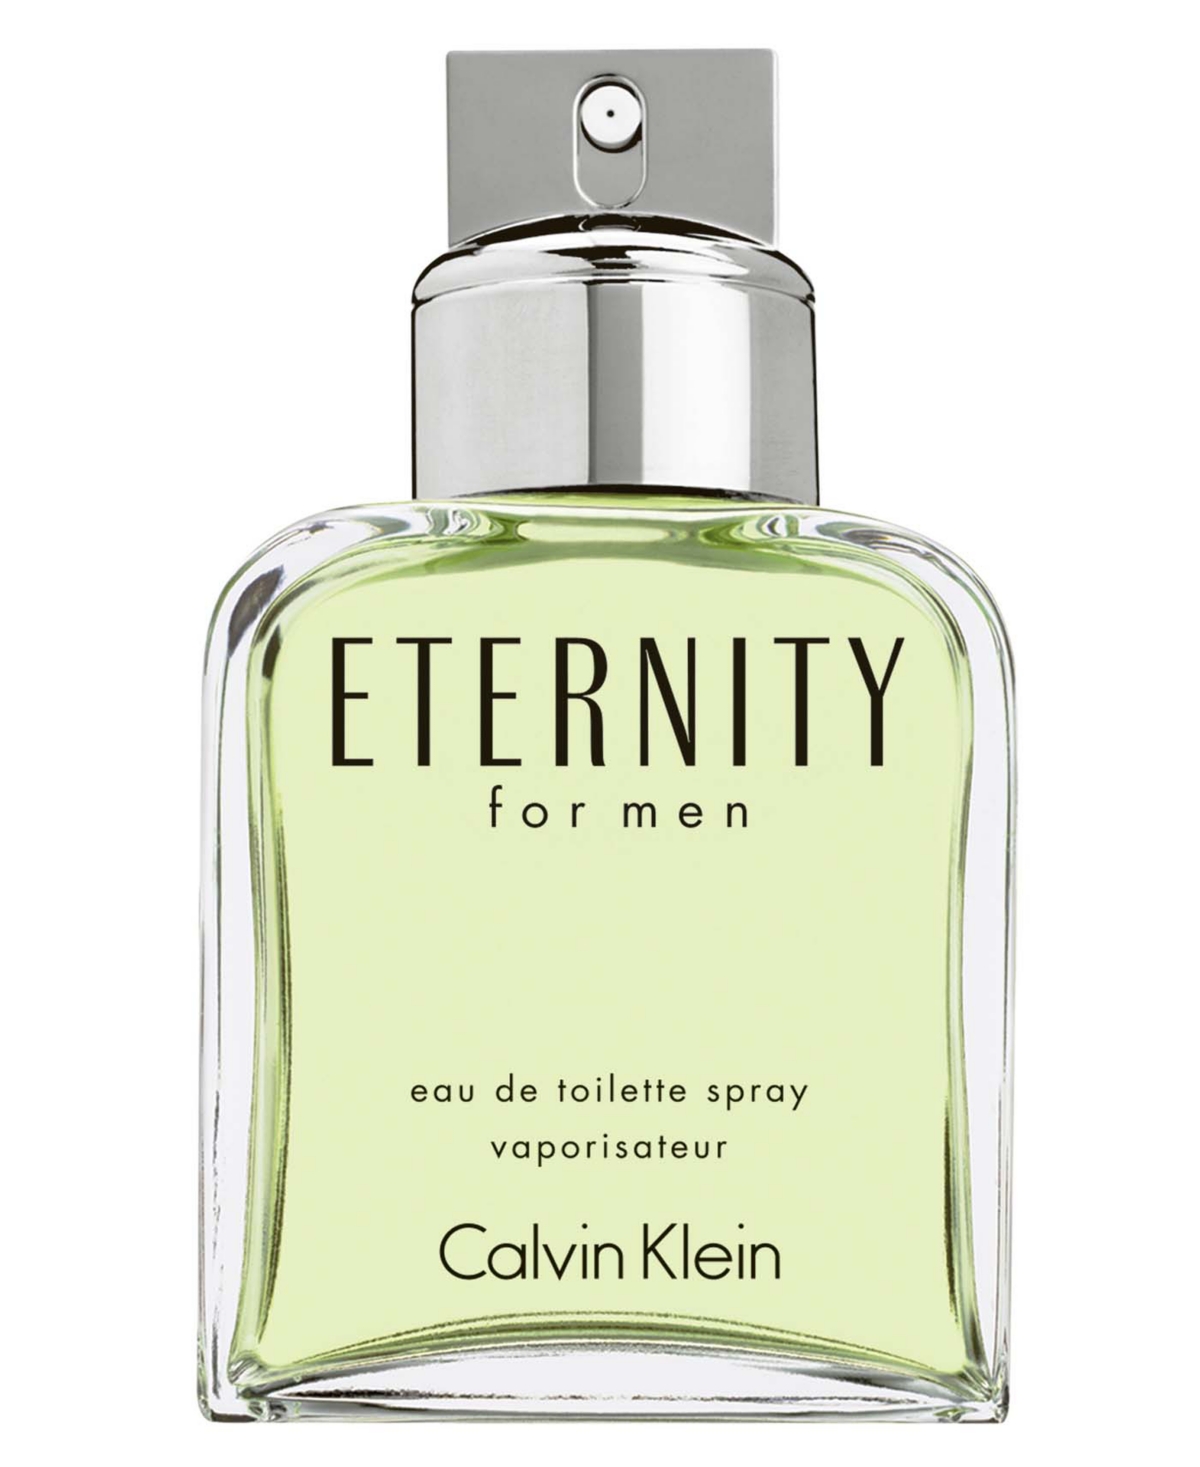 Calvin Klein ETERNITY for Eau de Toilette Spray, 6.7 oz & Reviews - Cologne - Beauty - Macy's